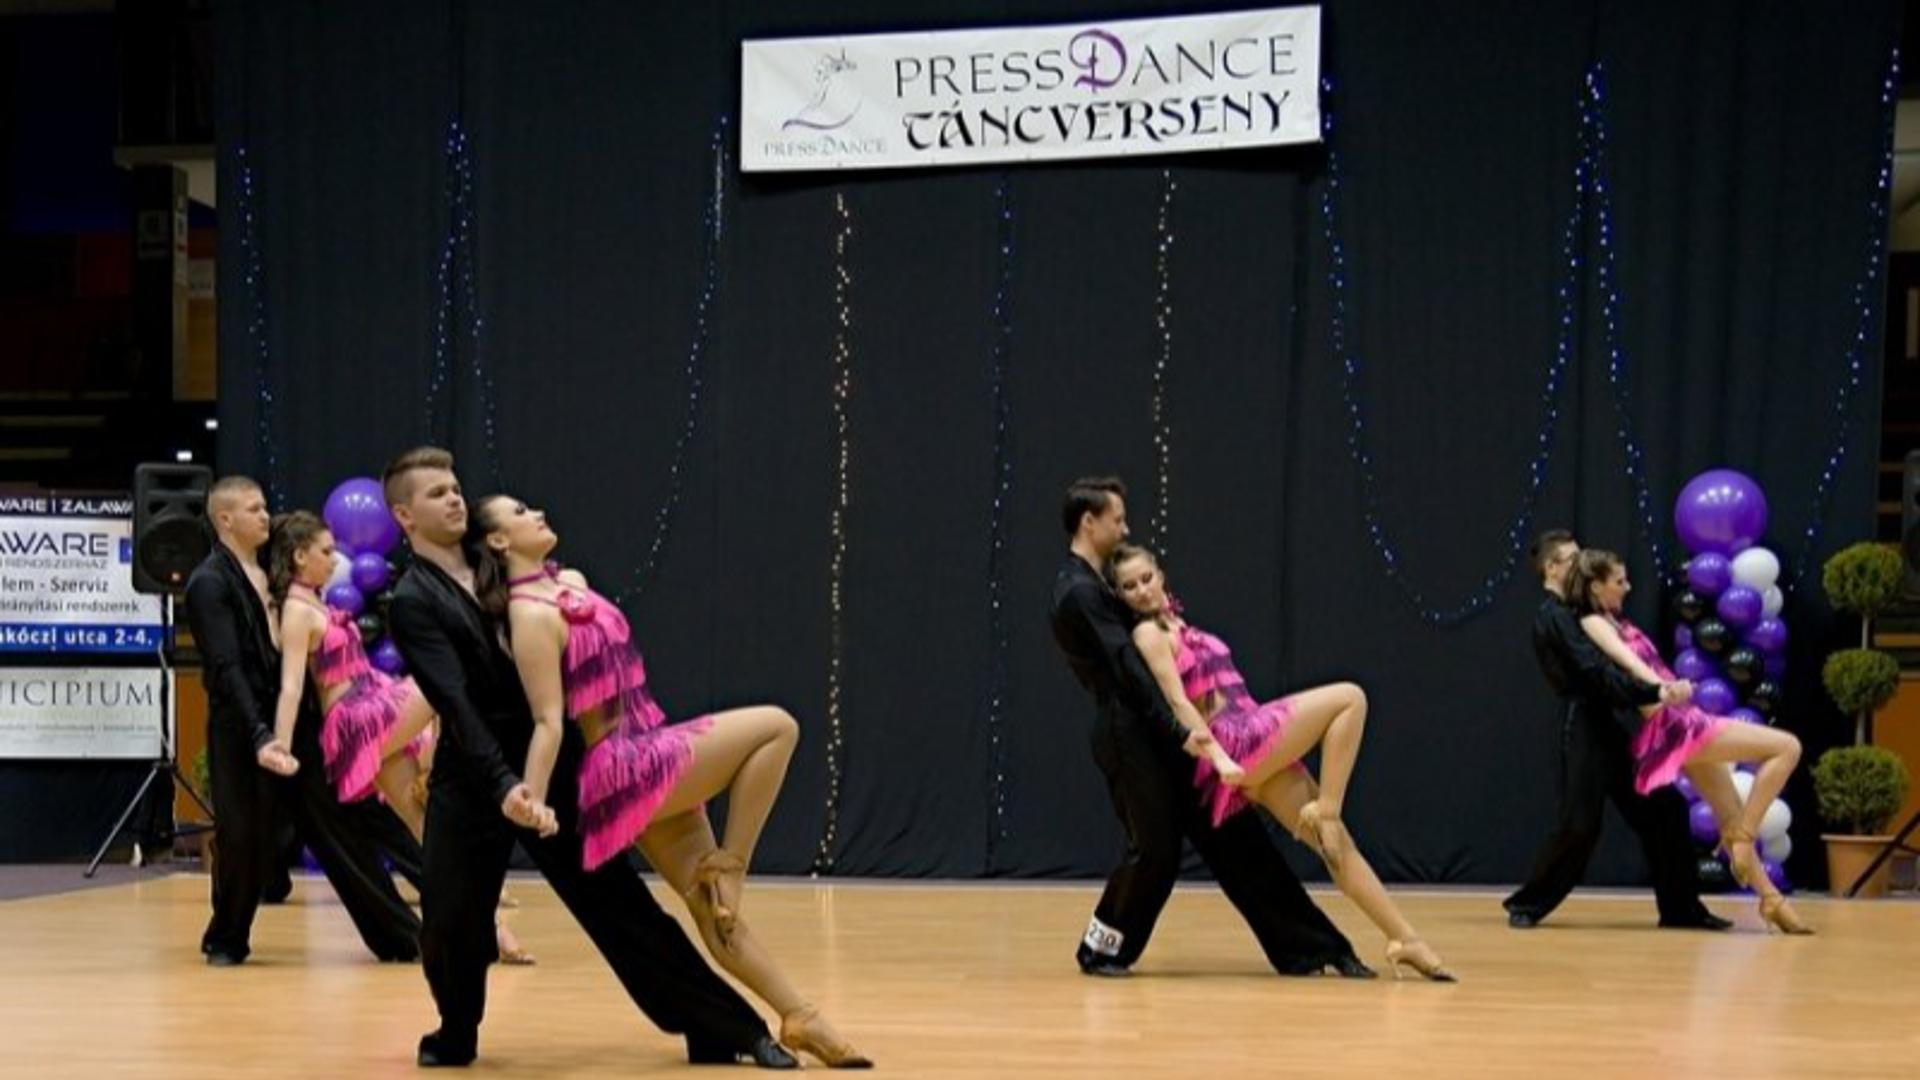 III. Press Dance Verseny 2015